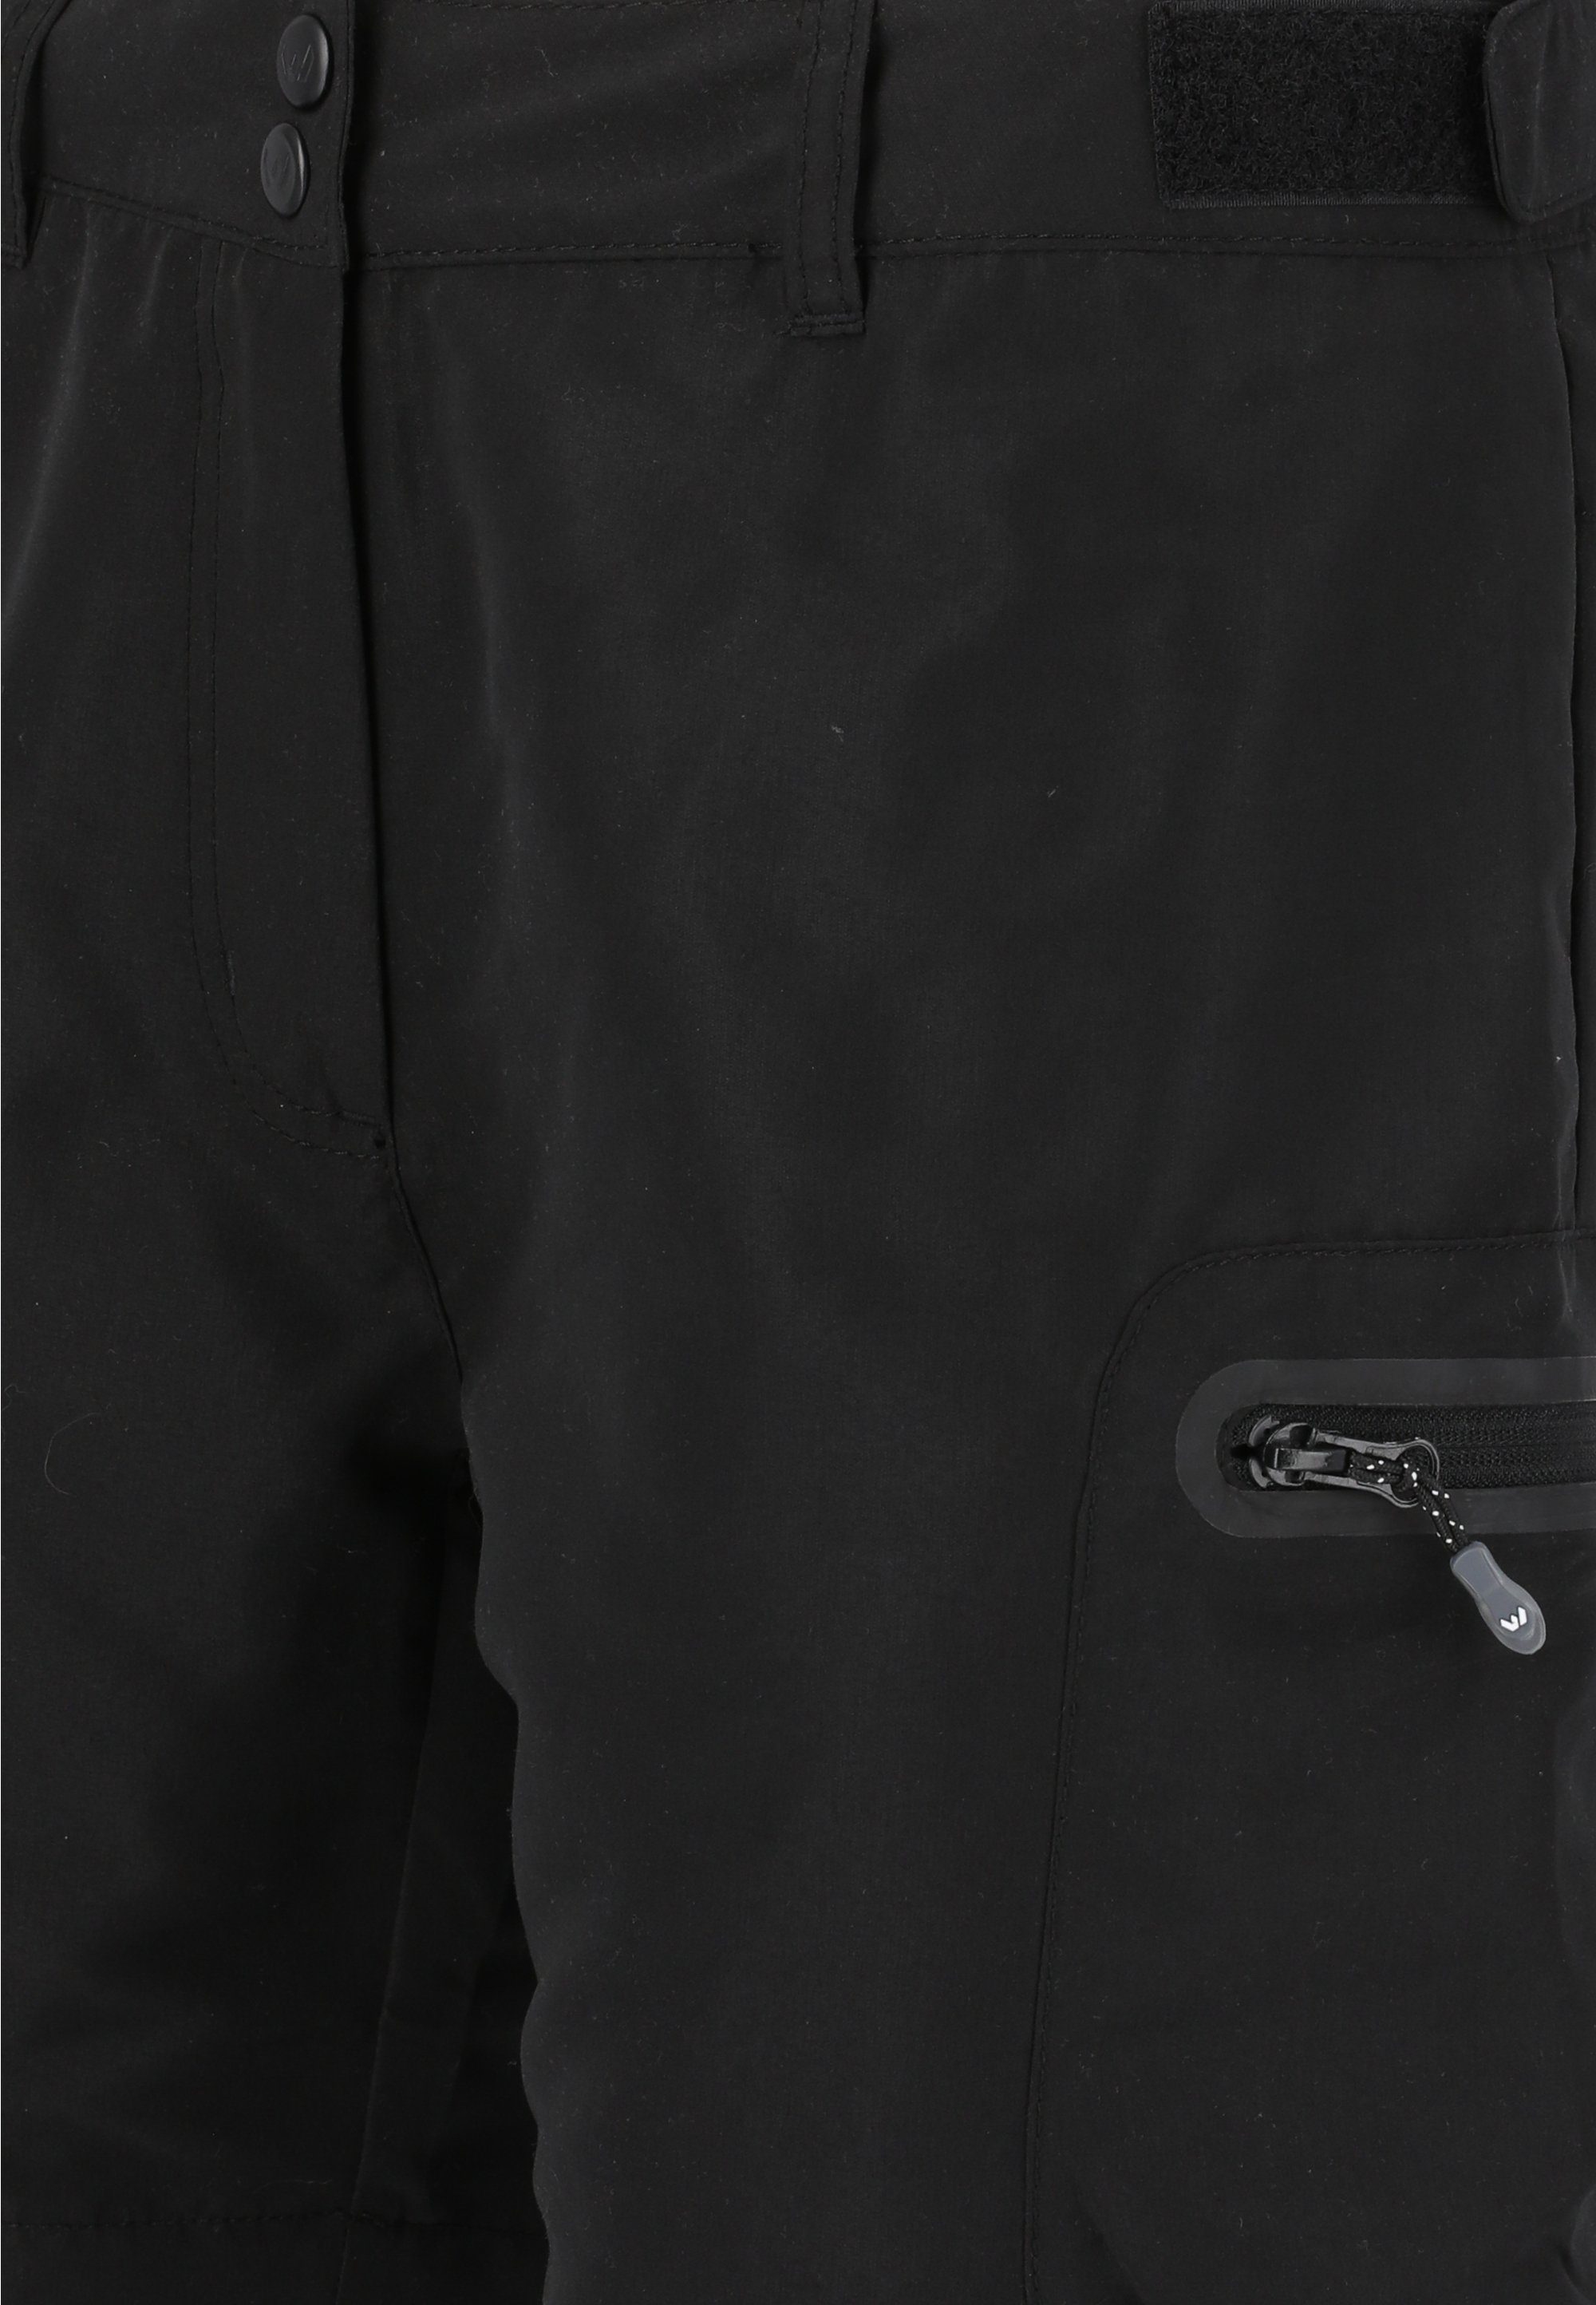 WHISTLER Shorts Stian mit Reißverschlusstaschen schwarz praktischen